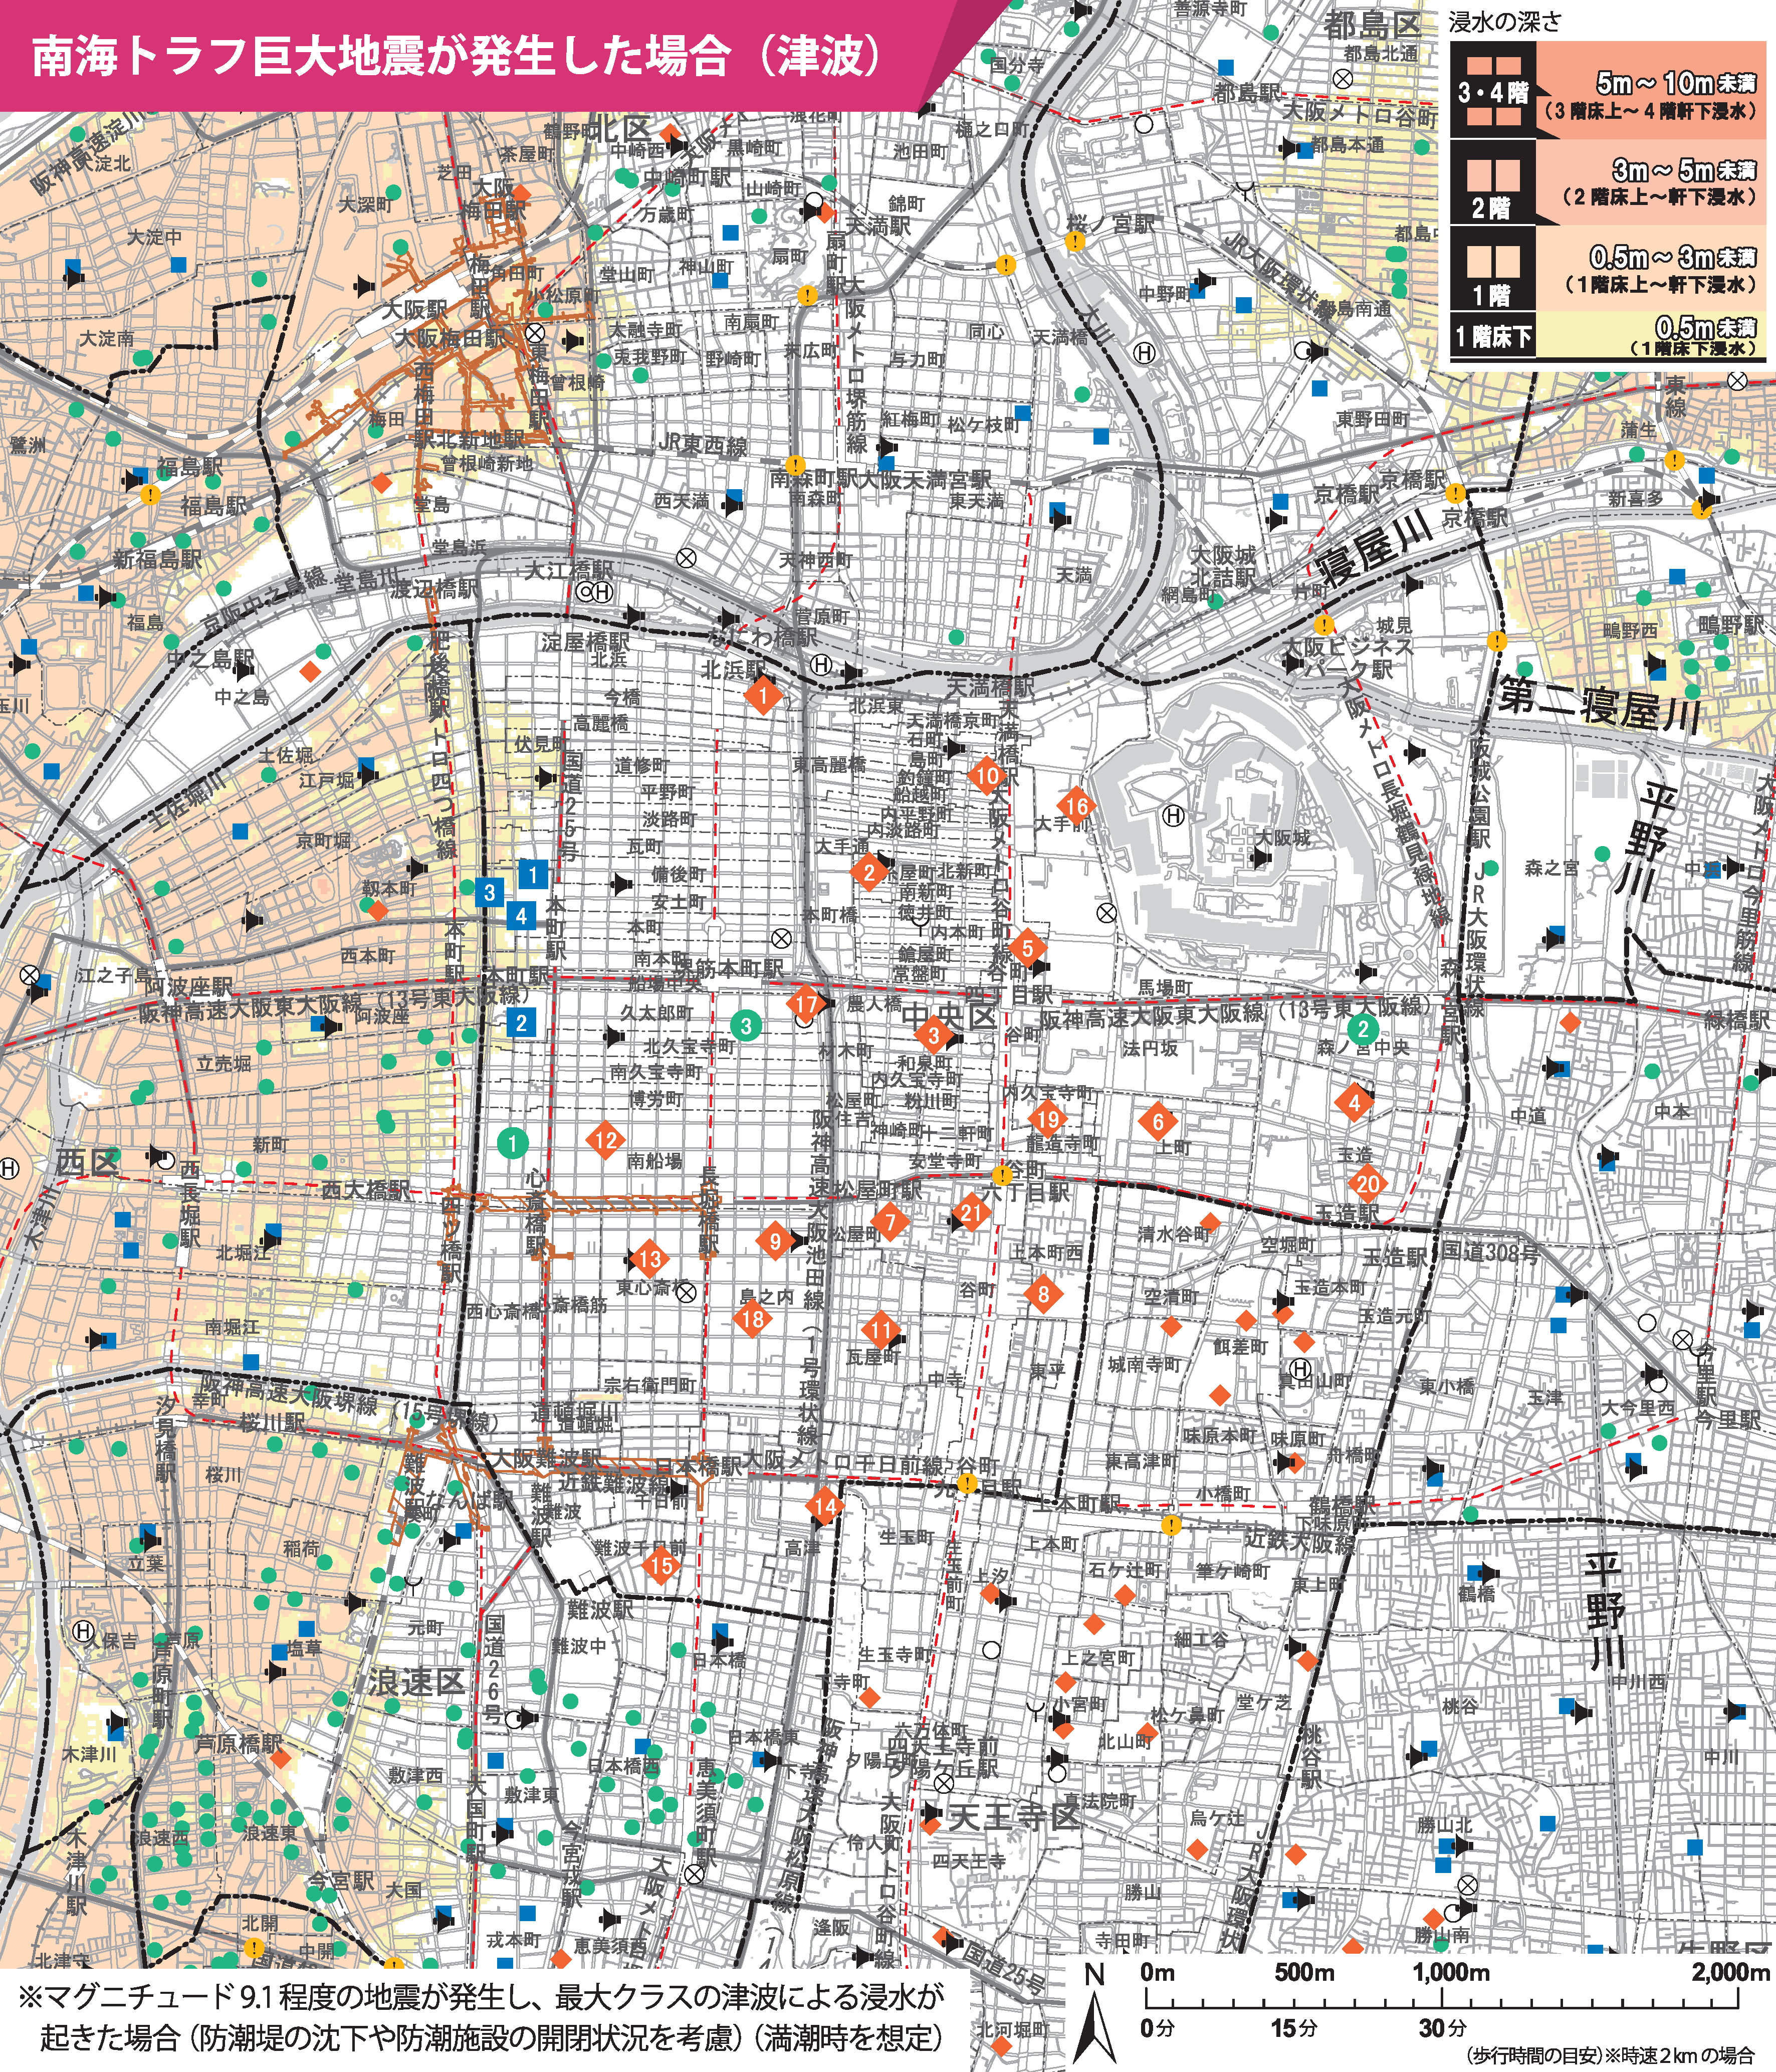 大阪市中央区のハザードマップ見たんですが...